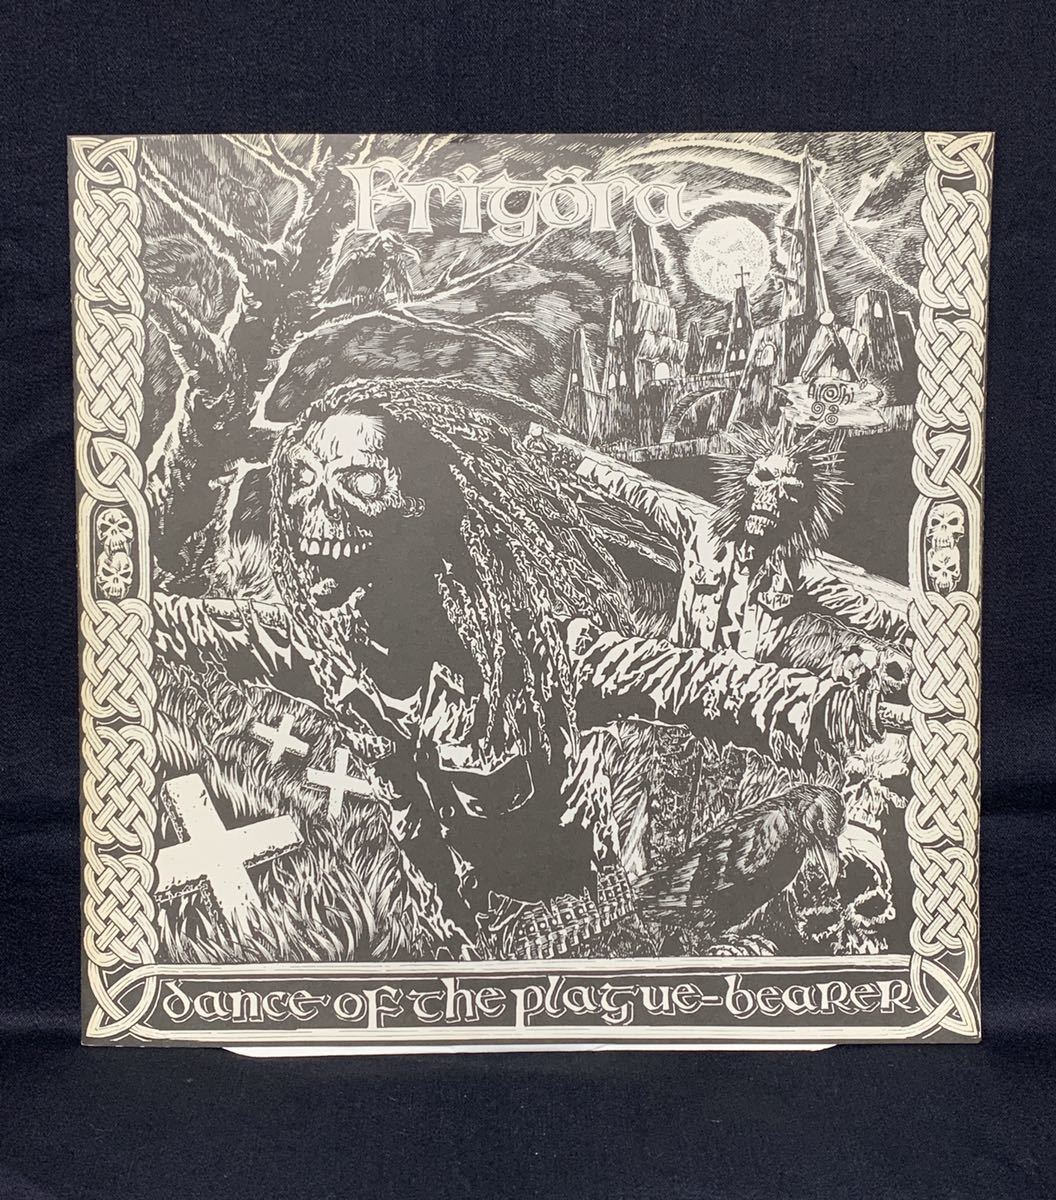 激レア Frigora Dance Of The Plague-Bearer LP パッチ付き Overthrow Records 1998 CRUST ハードコア レコード 委託品